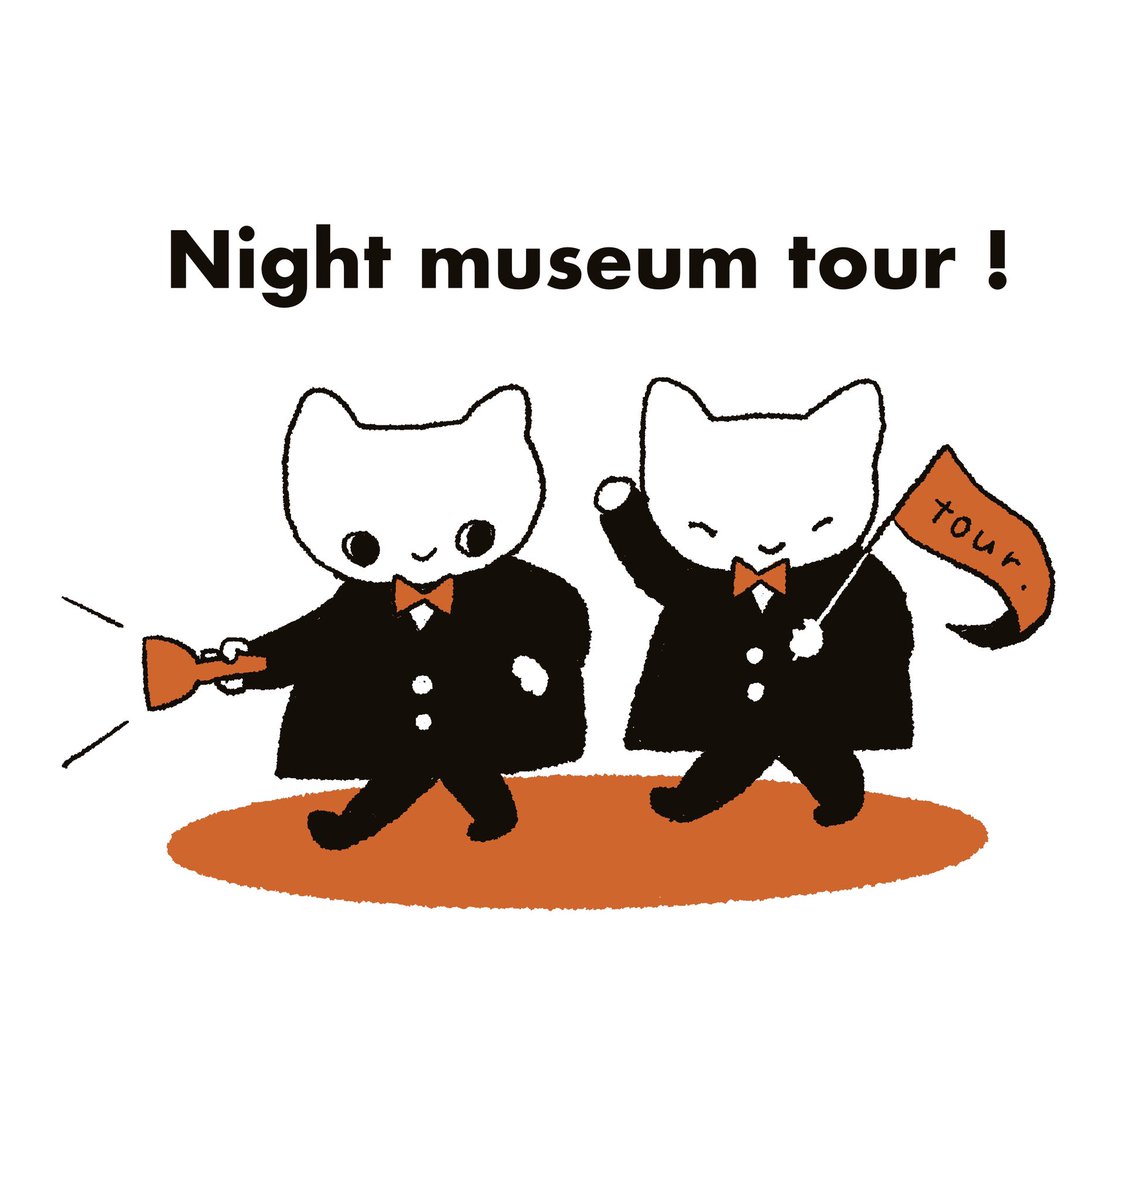 26ちゃんズが展示の小さな情報をご案内する「Night  museum  tour!」
会期中、毎日22時頃更新します。
こちらも是非お立ち寄りください🖼

https://t.co/xEnNqp9LwT 